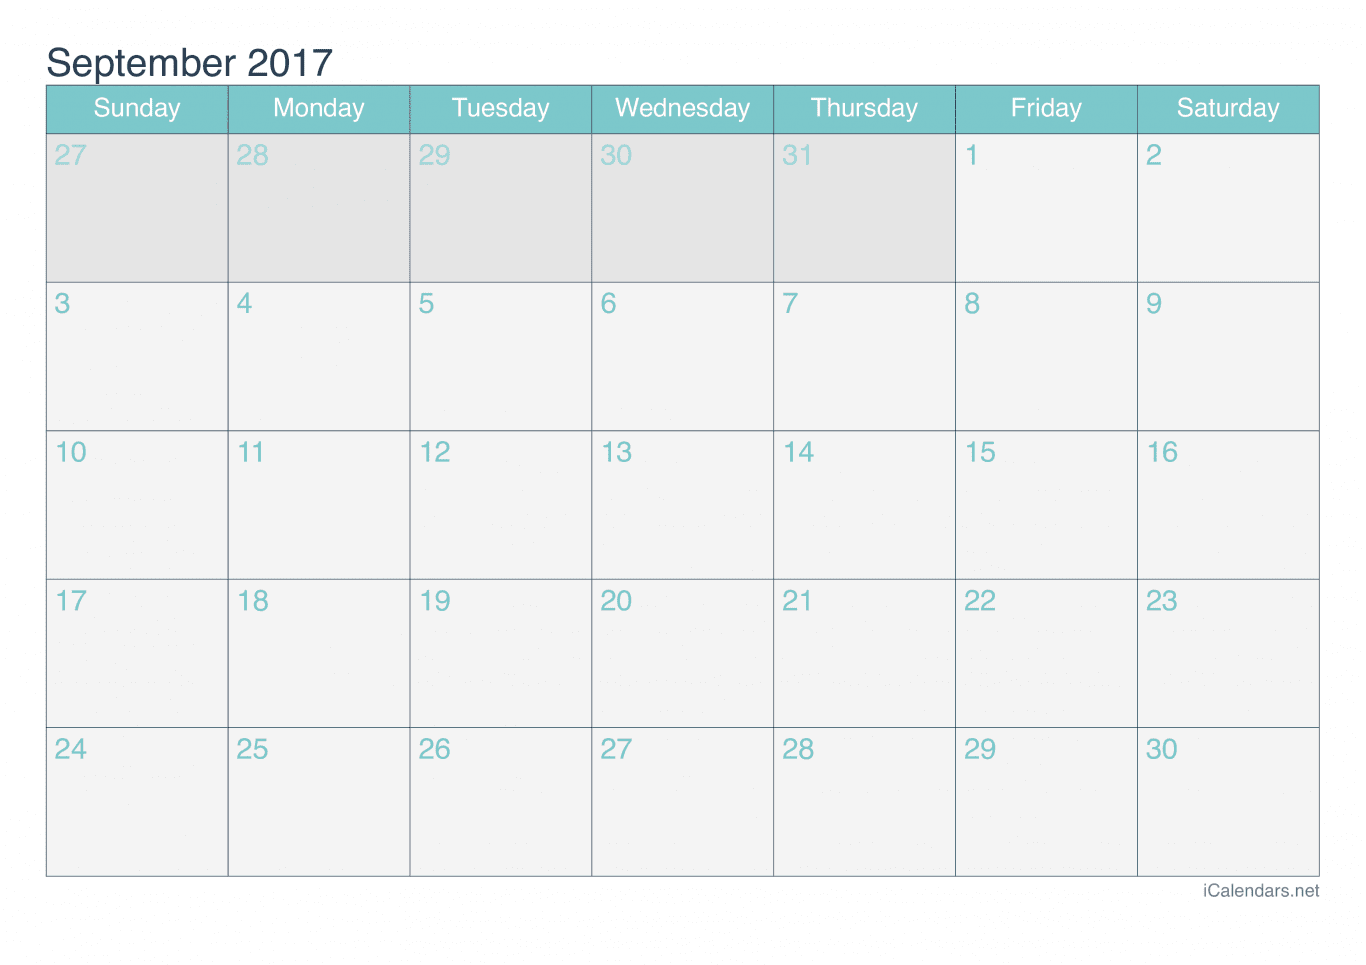 2017 September Calendar - Turquoise